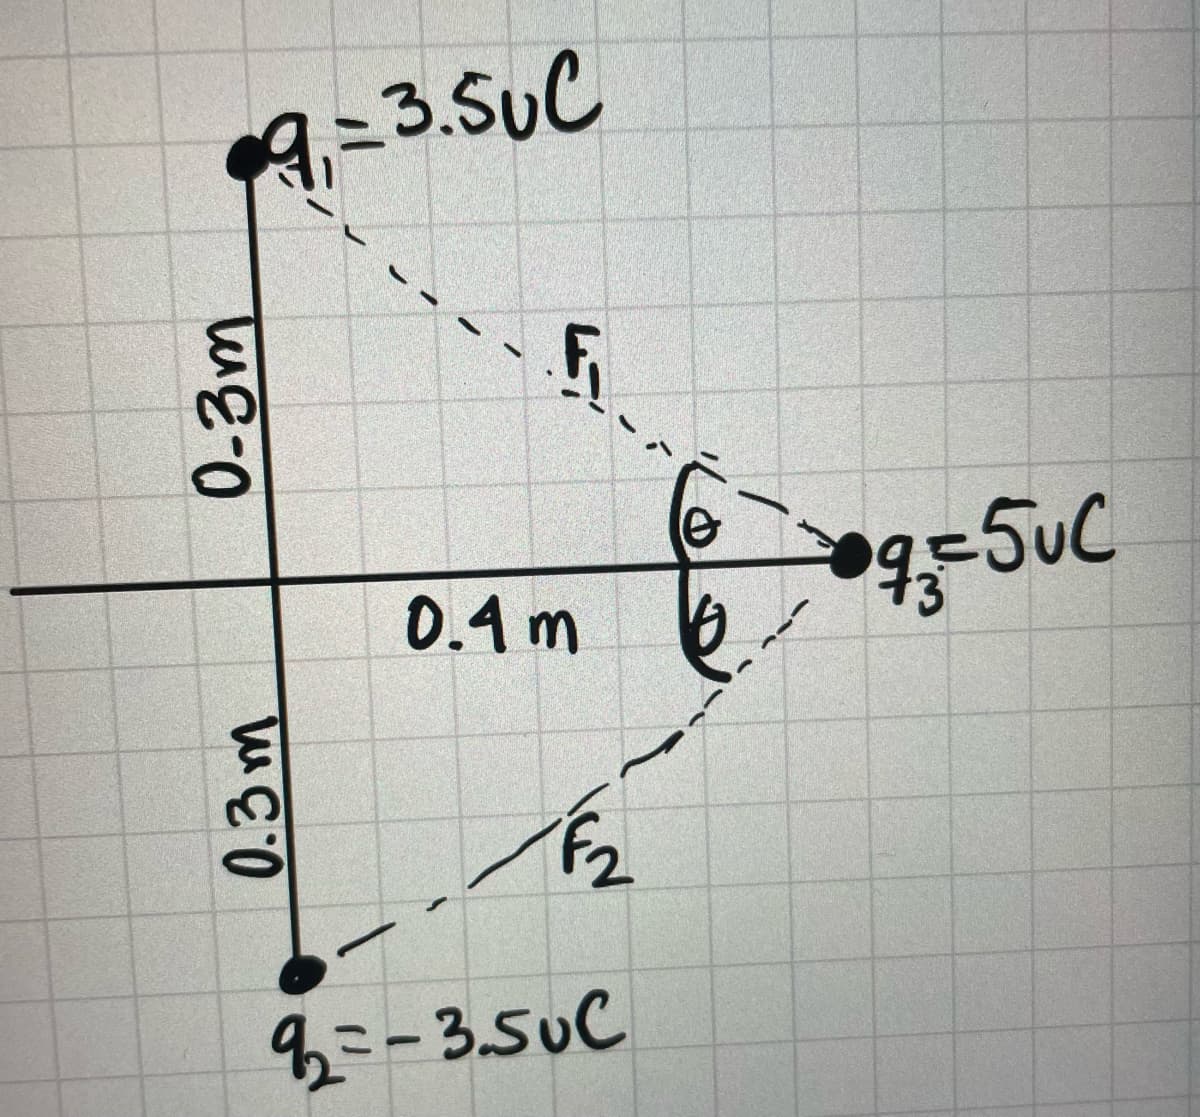 9=3.SuC
0.4 m
4ミ-3.50C
0.3m
0-3m
